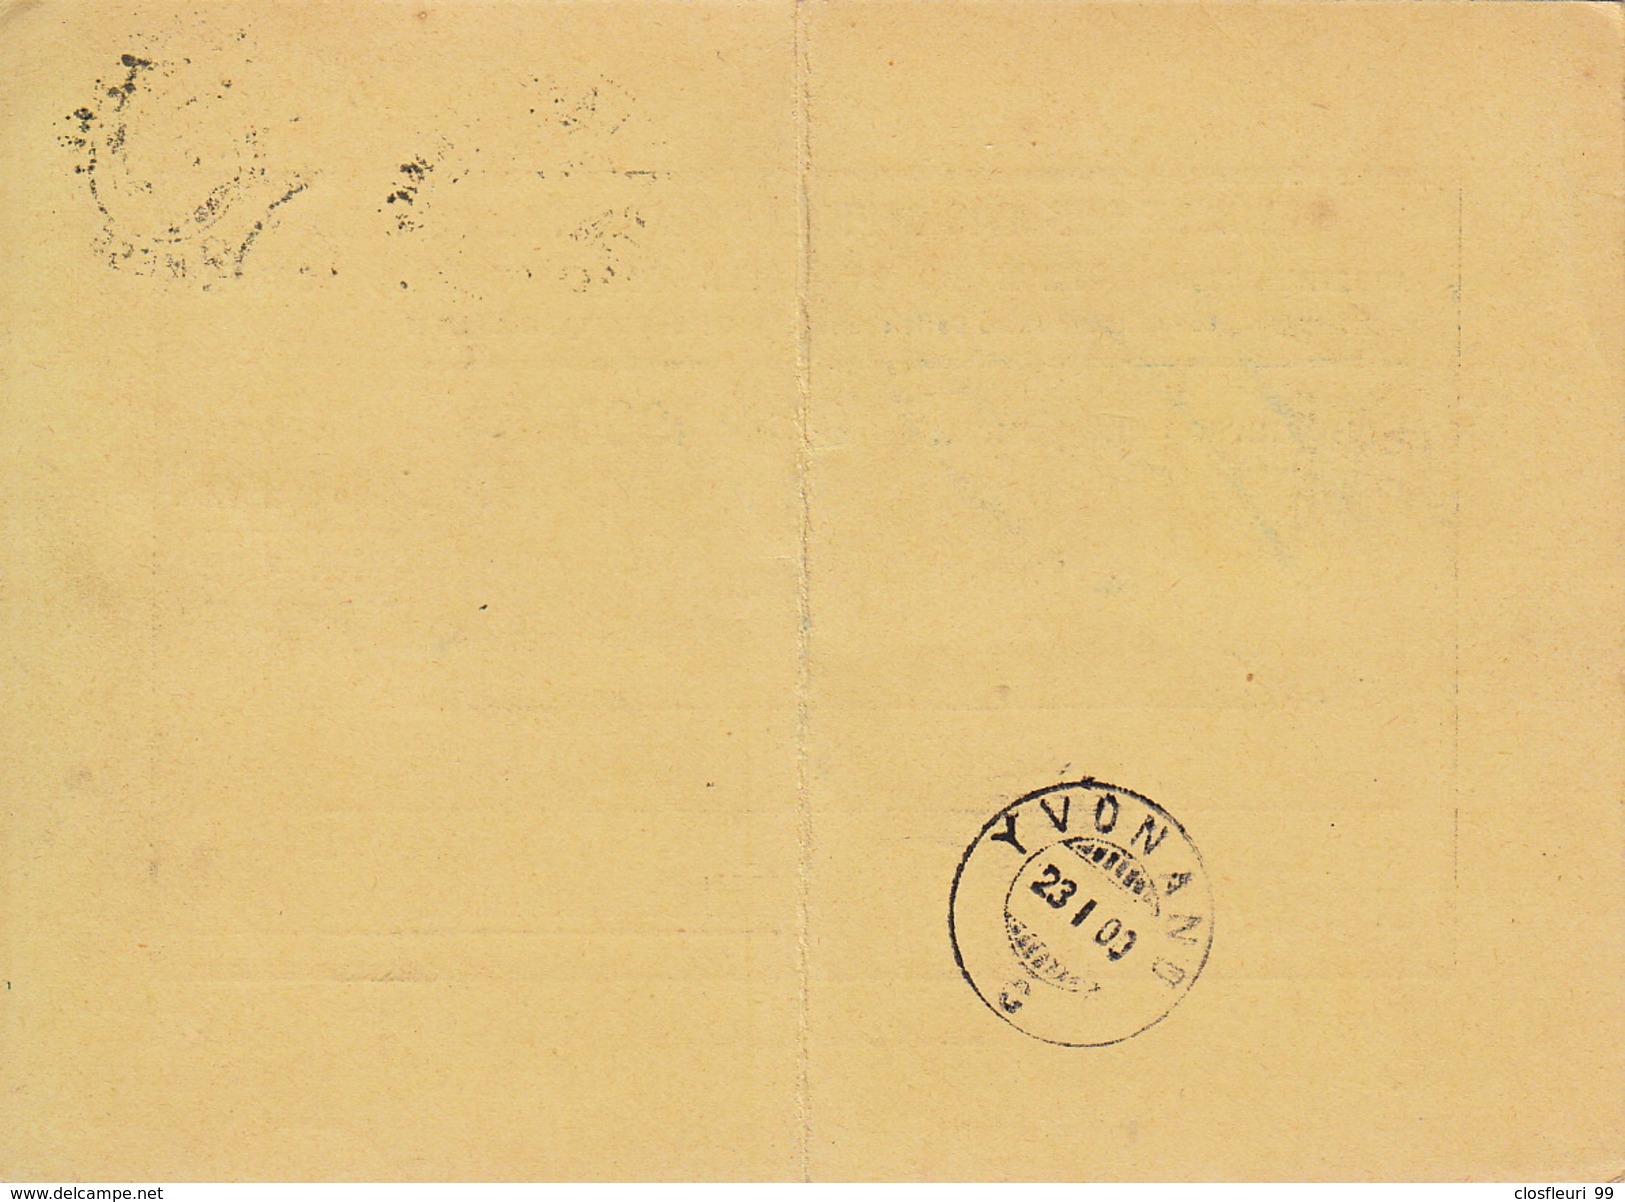 Remboursement  Pour 1900: Feuille Avis Officiels Du Canton De VD / 23.1.1900. Cachet Arrivée Yvonand - Covers & Documents